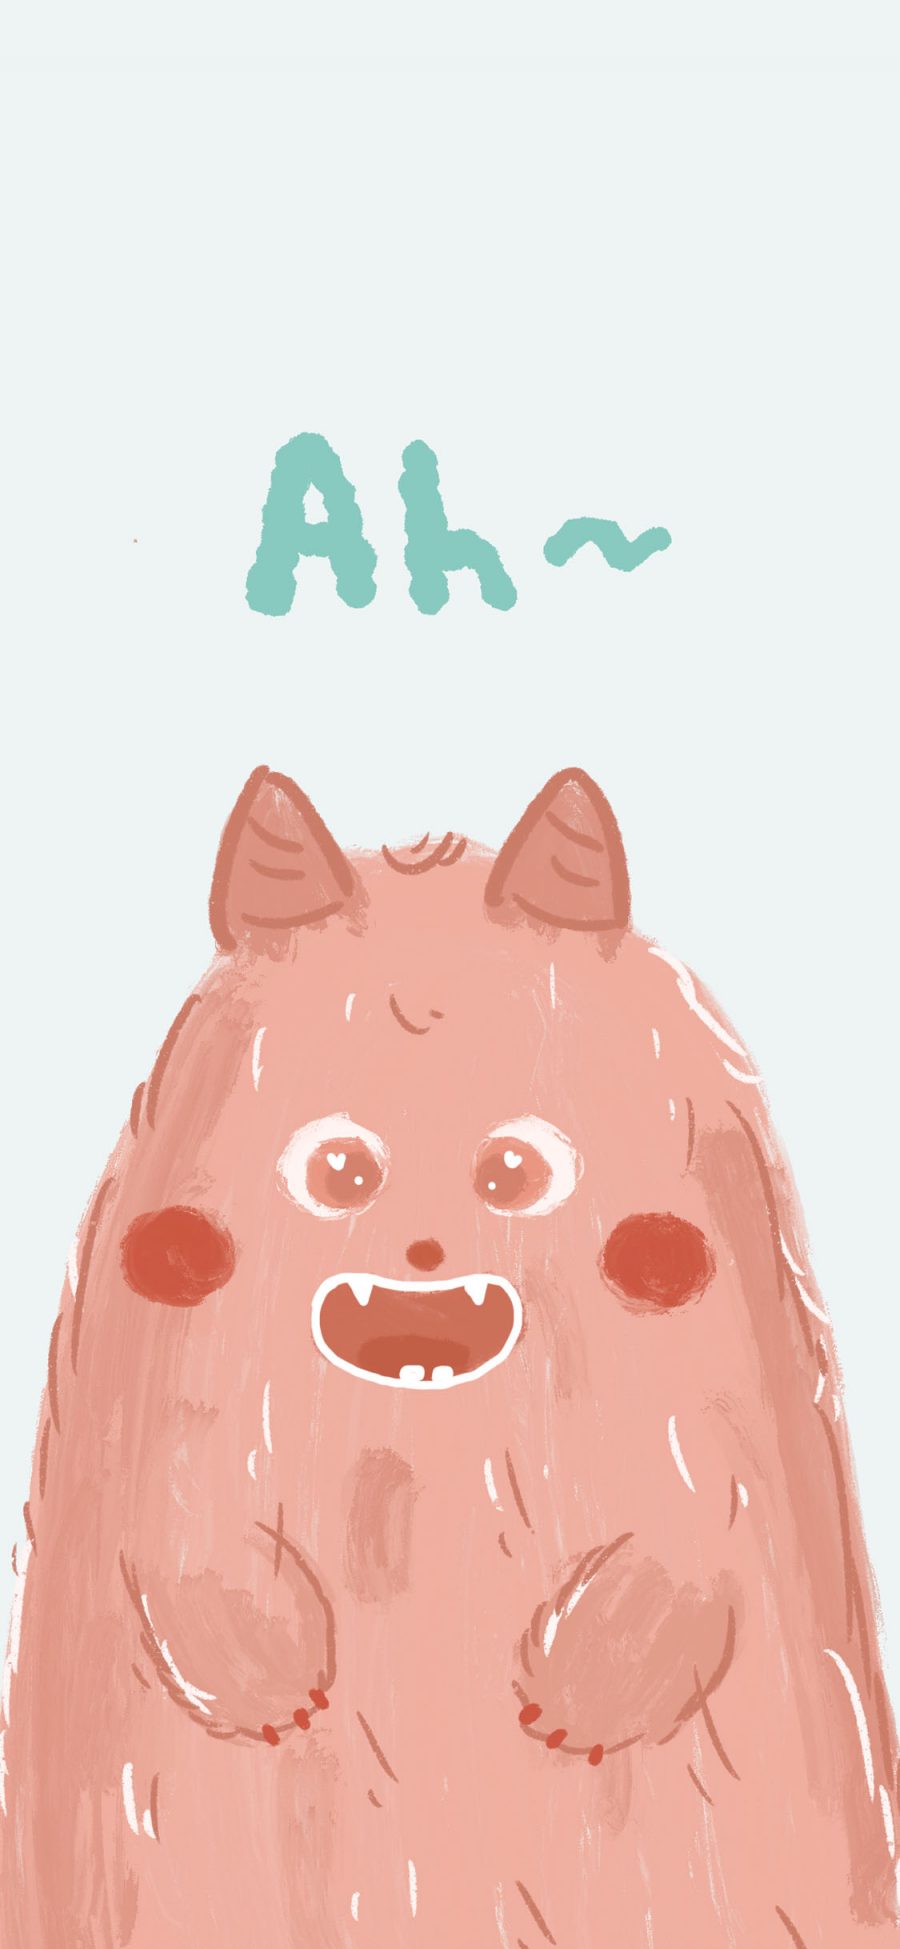 [2436×1125]小怪兽 可爱 Ah 彩绘 苹果手机动漫壁纸图片